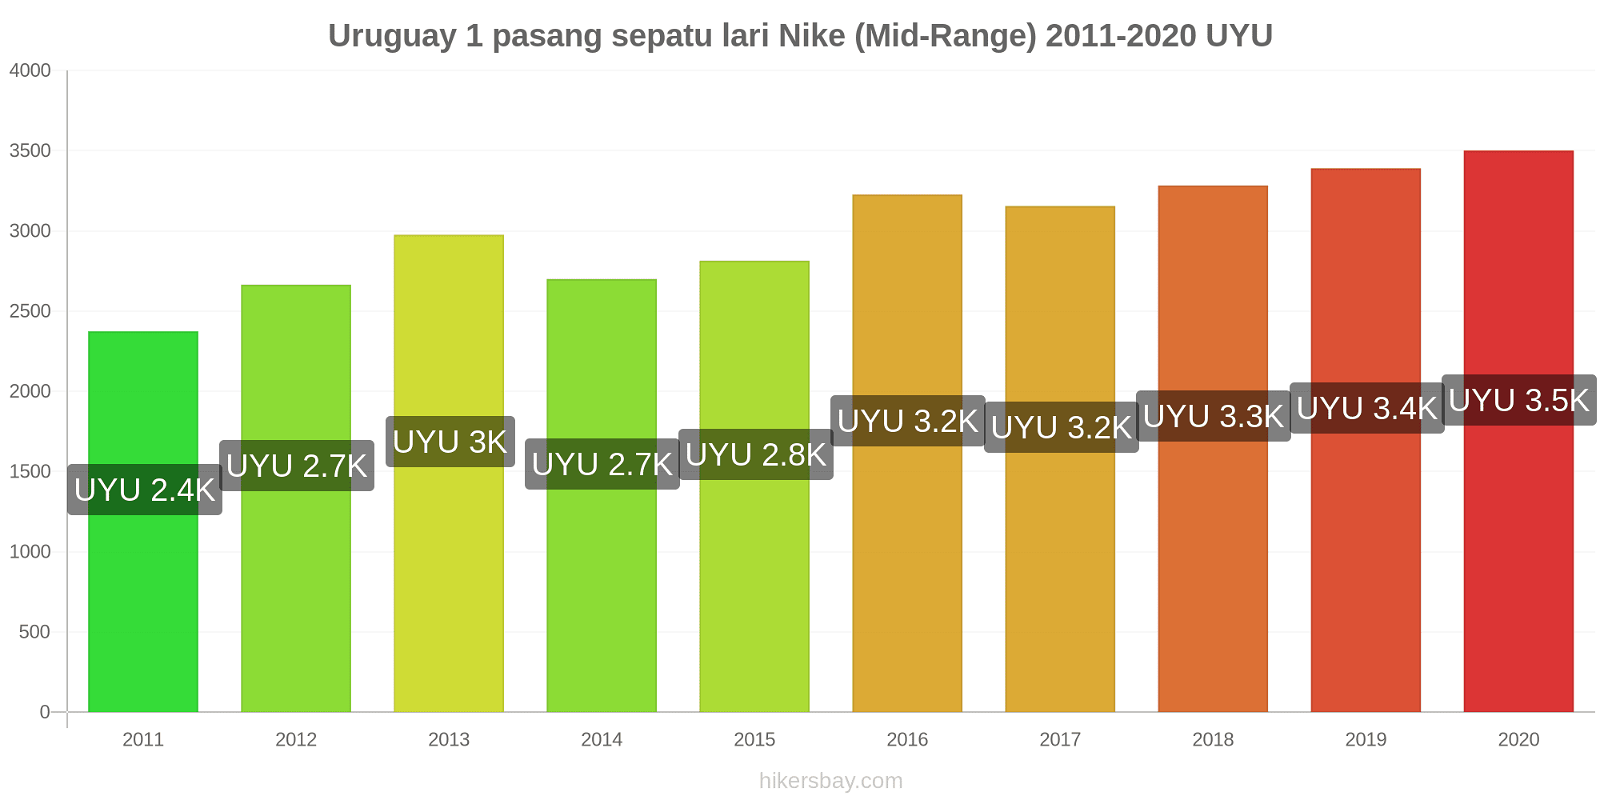 Uruguay perubahan harga 1 pasang sepatu lari Nike (Mid-Range) hikersbay.com